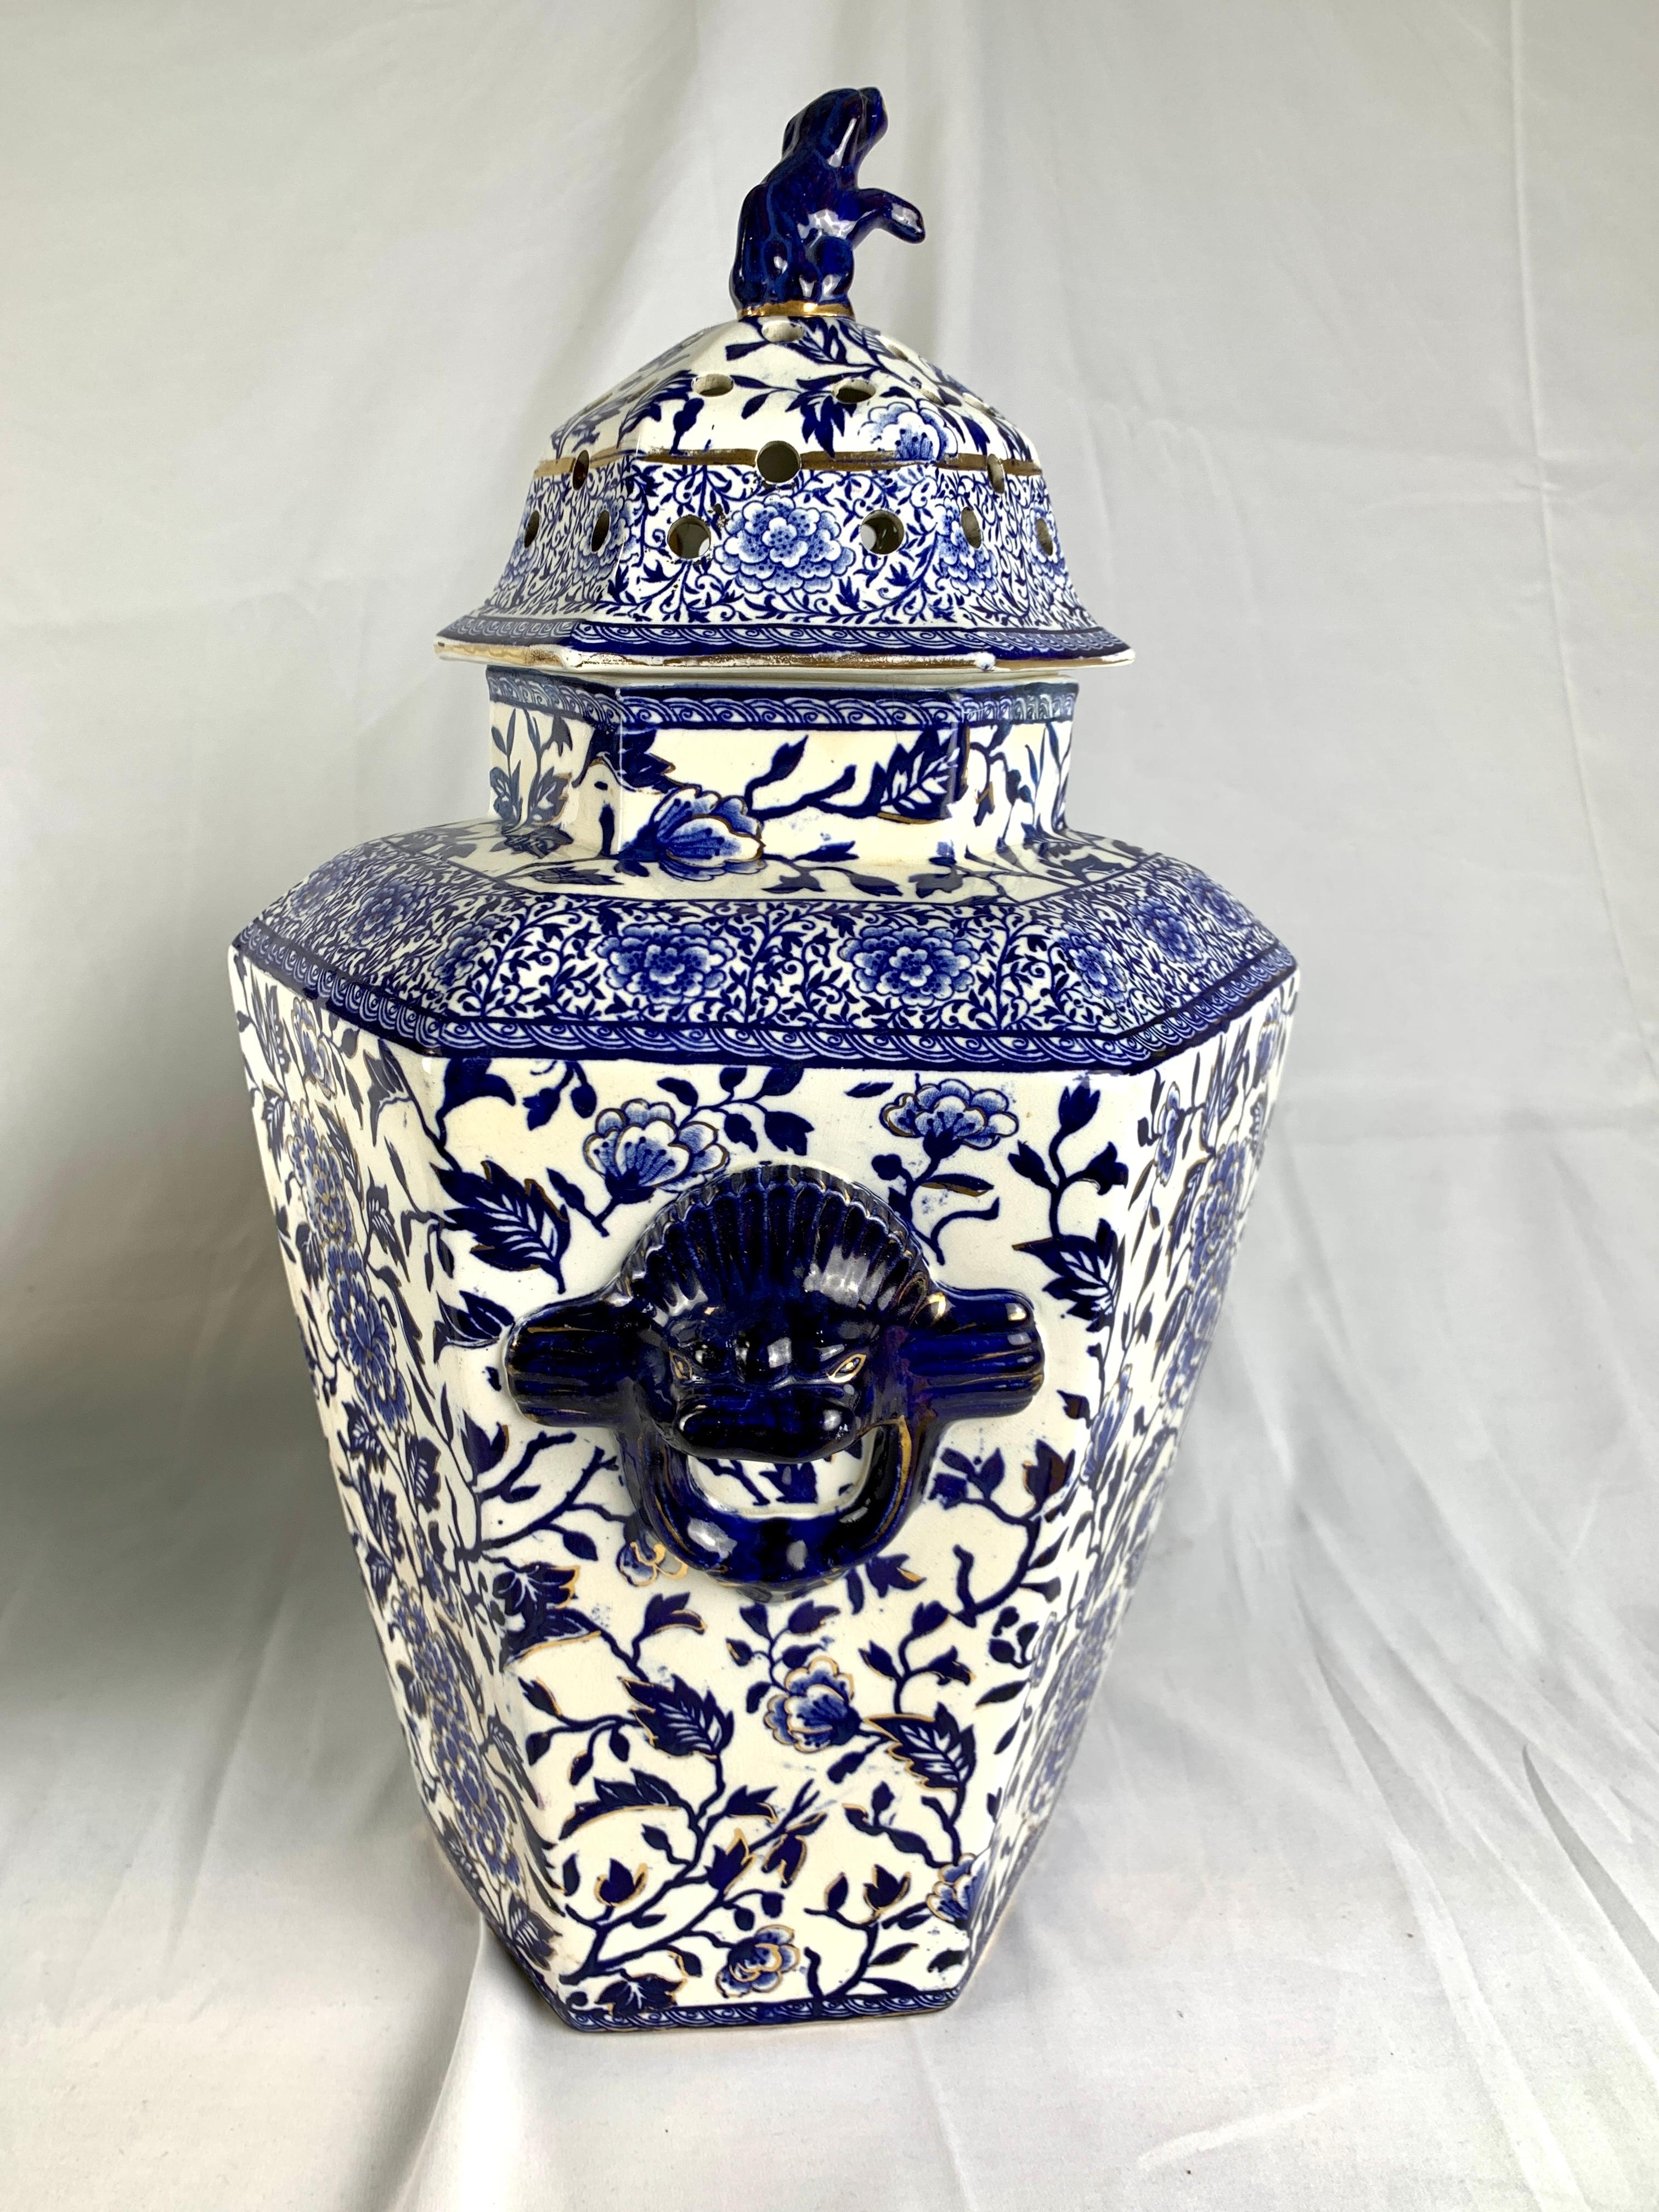 Cette paire de grandes jarres hexagonales bleues et blanches est exquise.
Fabriquée en Angleterre vers 1825, avec des dimensions de 18,5